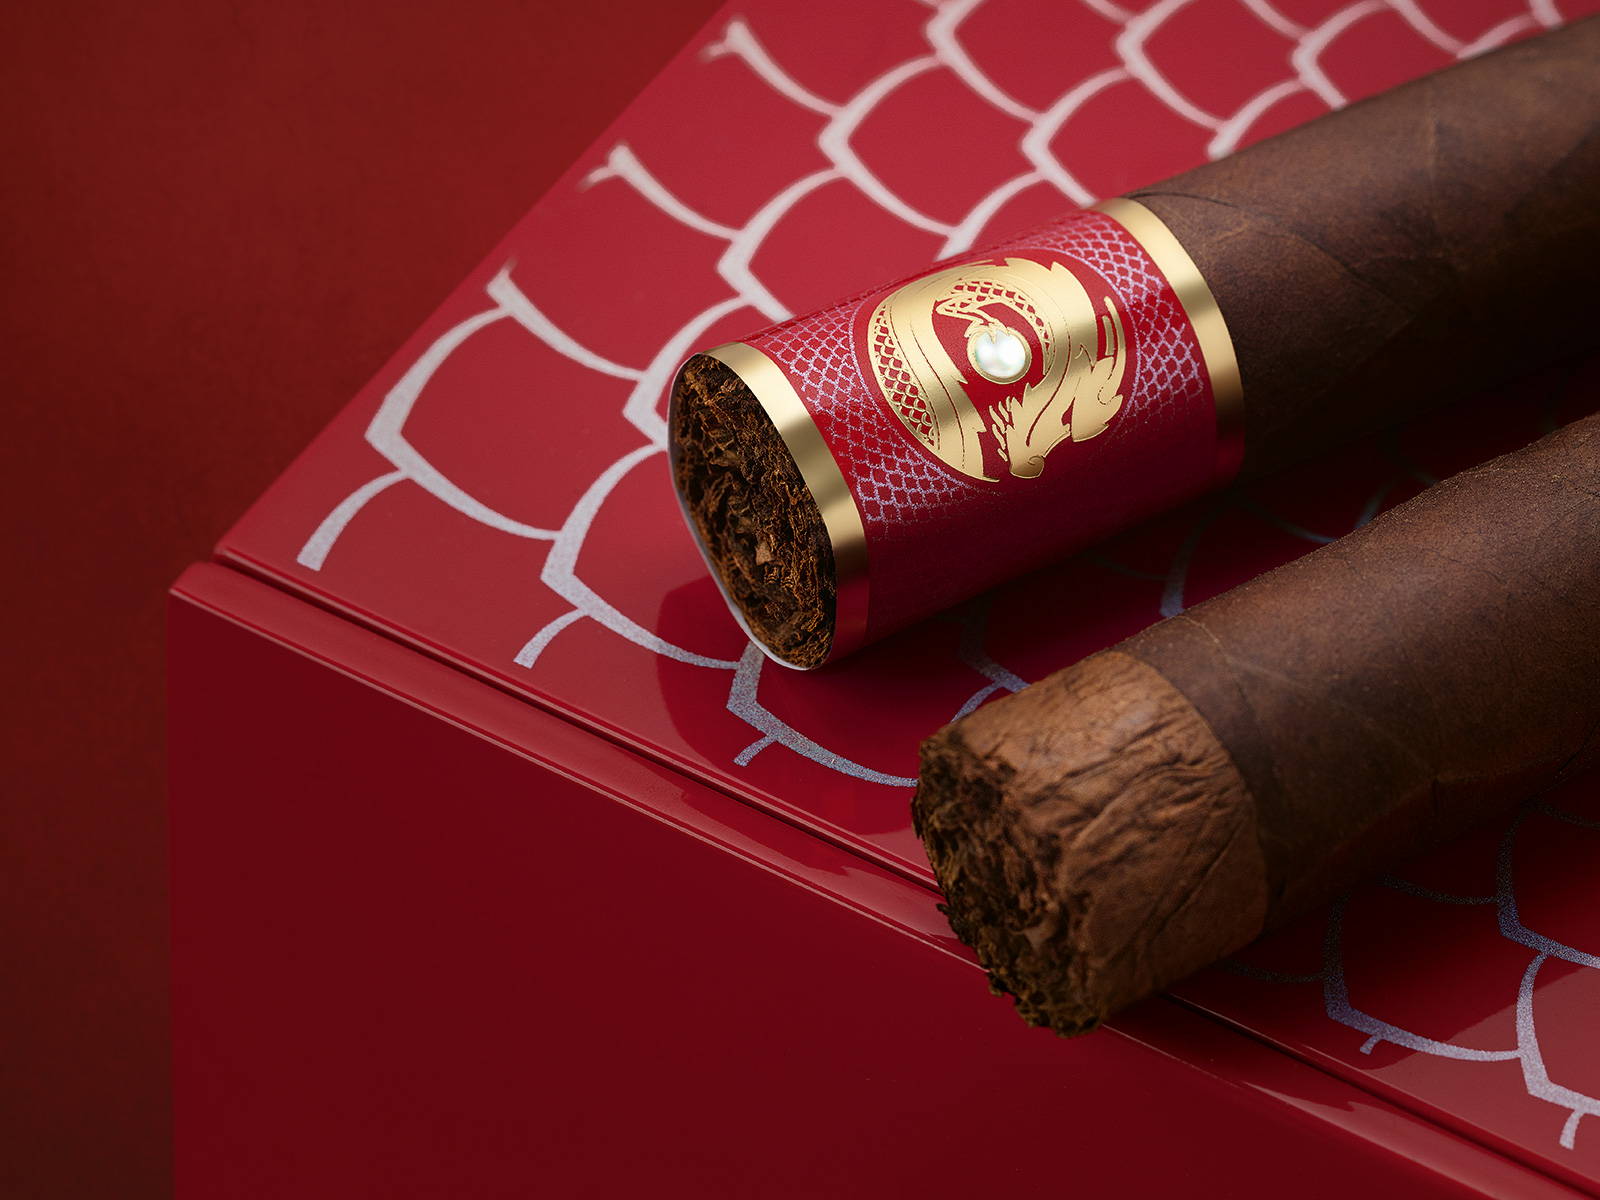 Zwei Davidoff Year of the Dragon Limited Edition Gran-Toro-Zigarren, platziert auf dem Deckel ihrer Kiste.